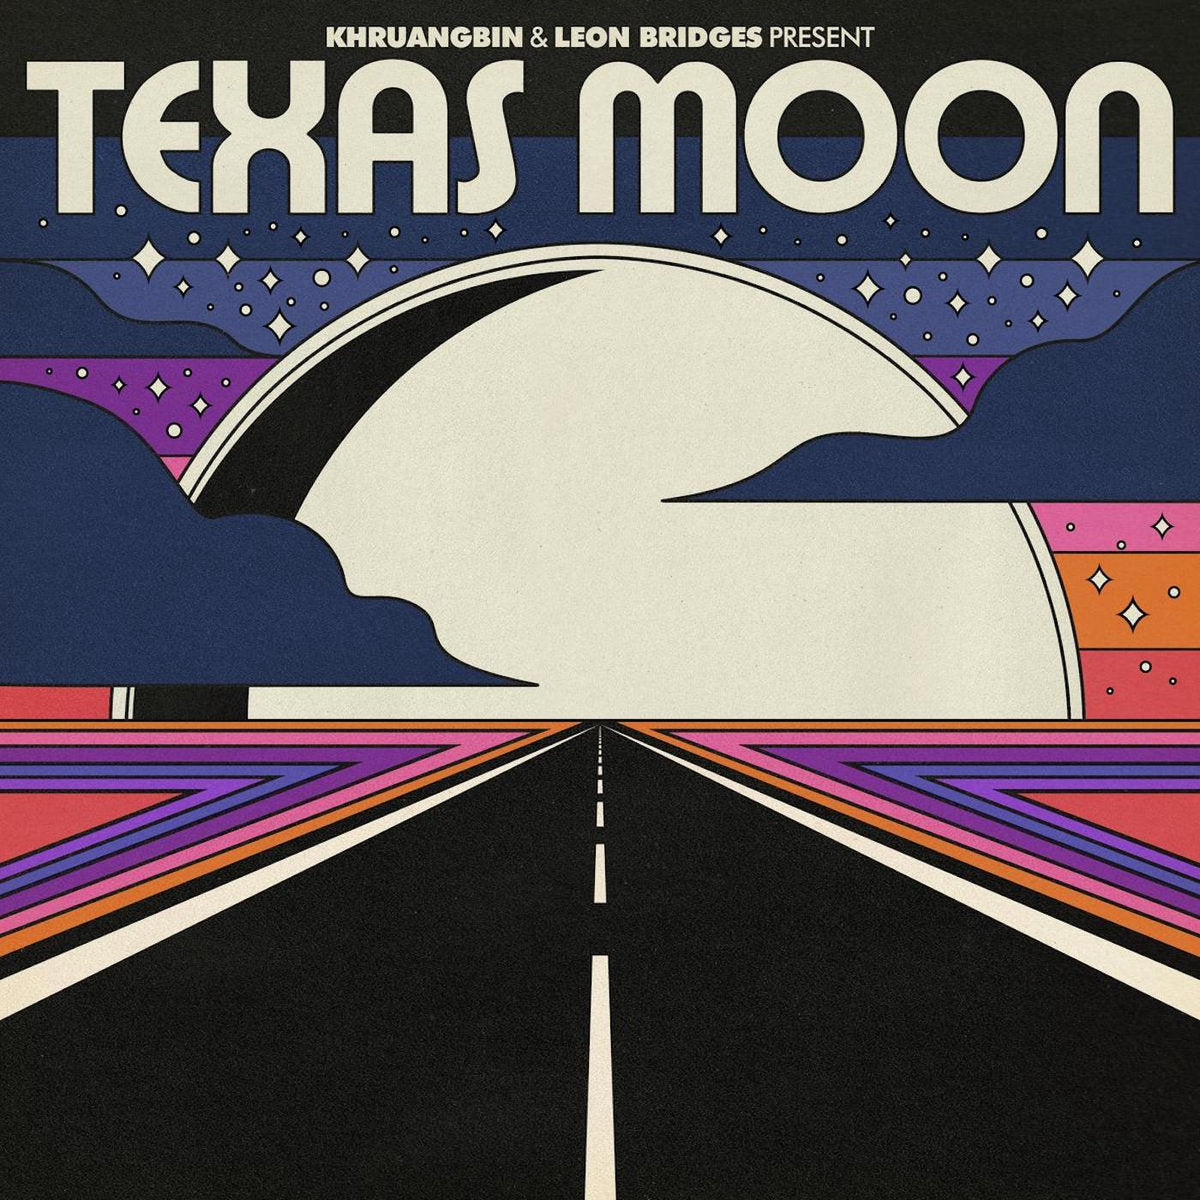 Khruangbin & Leon Bridges - Texas Moon (Vinyl EP)